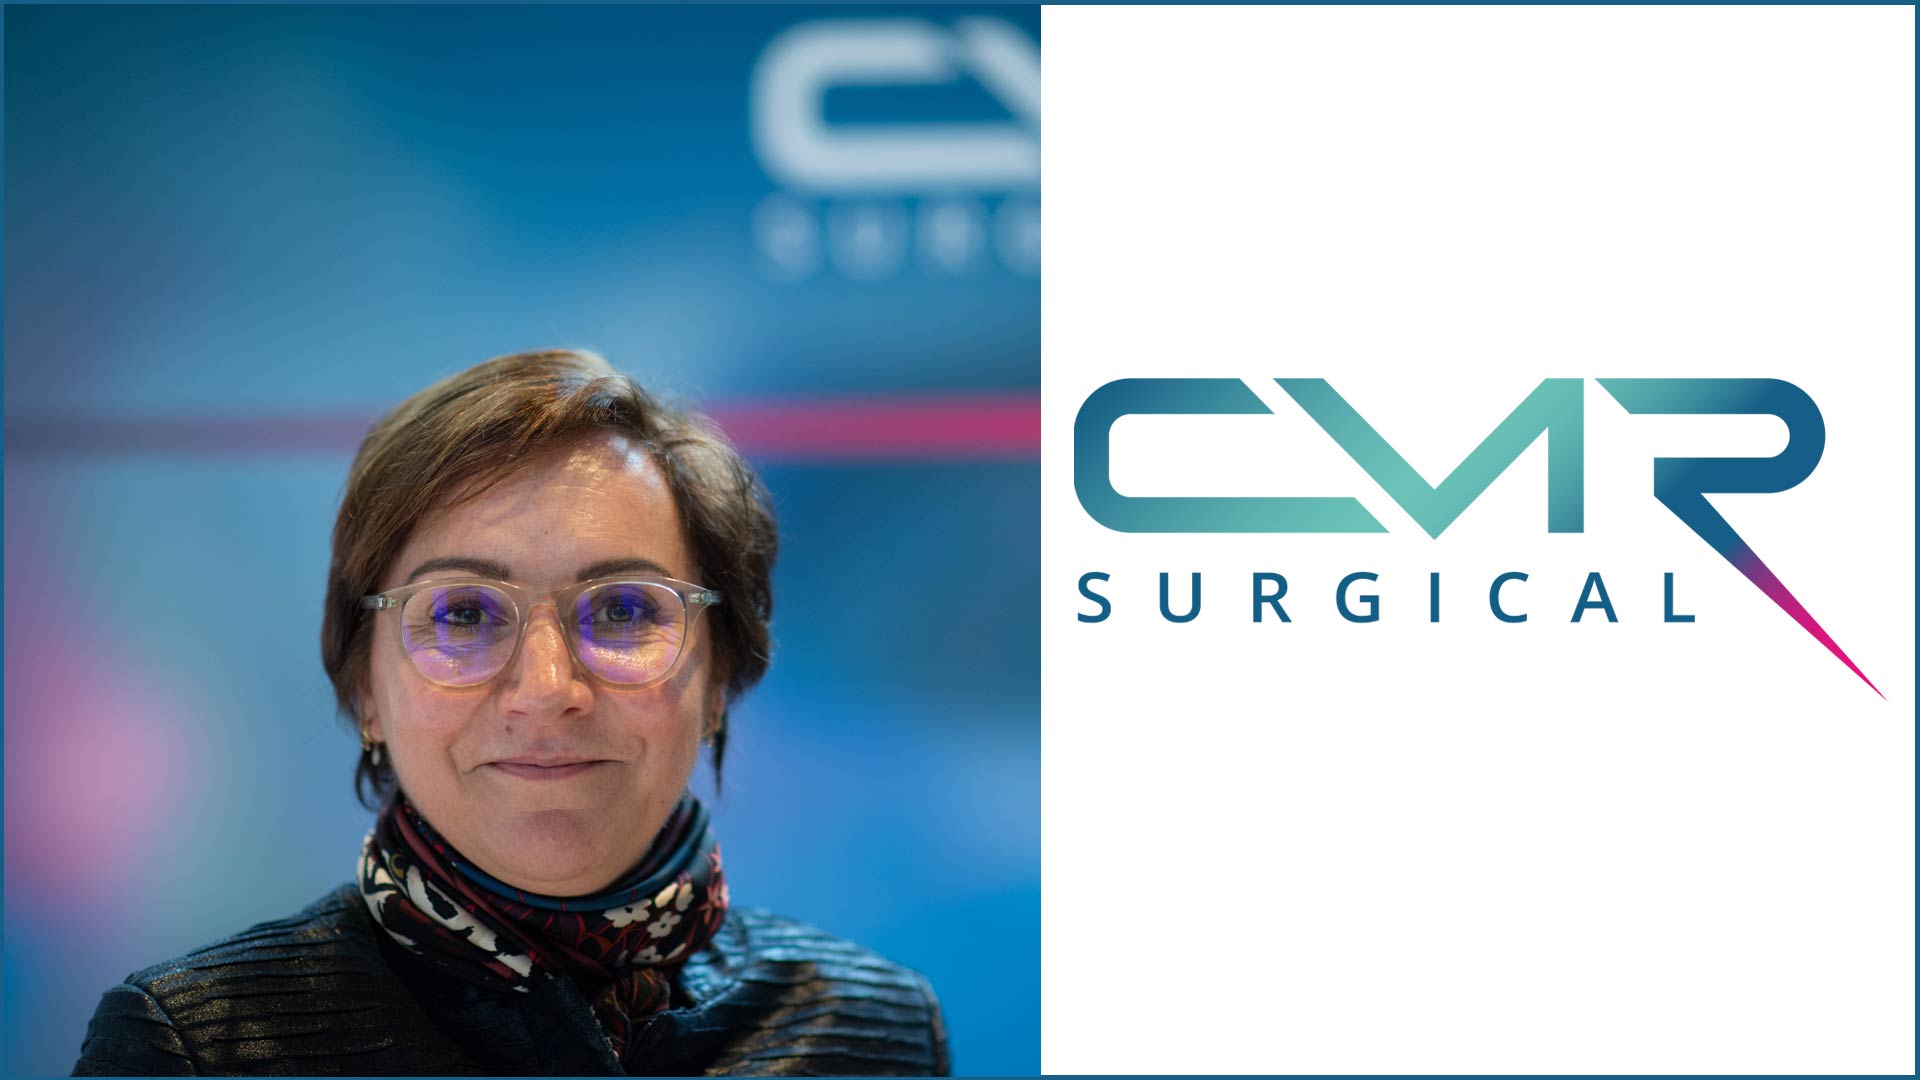 CMR Surgical, la revolución de la cirugía